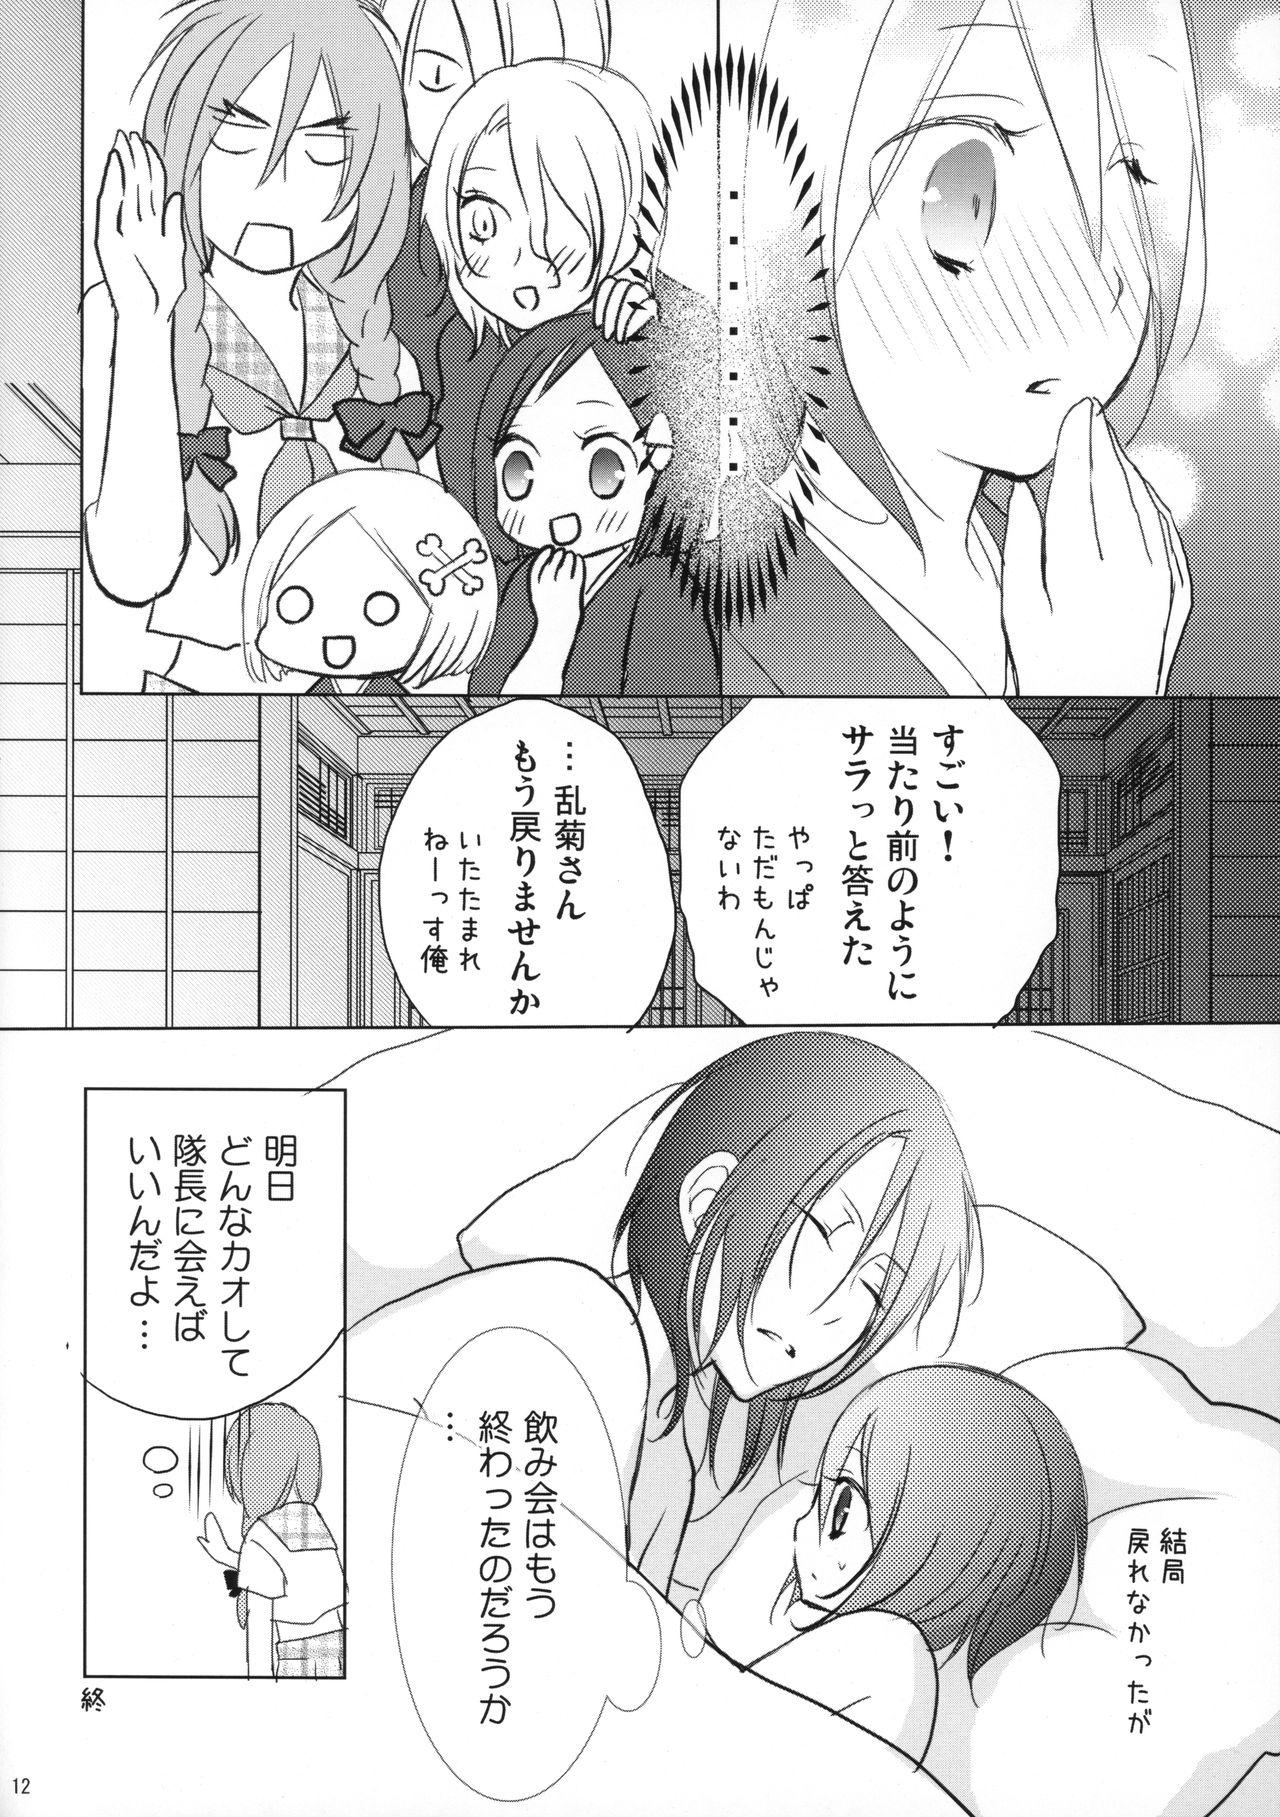 Amature (C82) [DewDrop (Sakurai)] Tsukishima-san in Kuchiki-ke (Bleach) - Bleach Chupada - Page 11